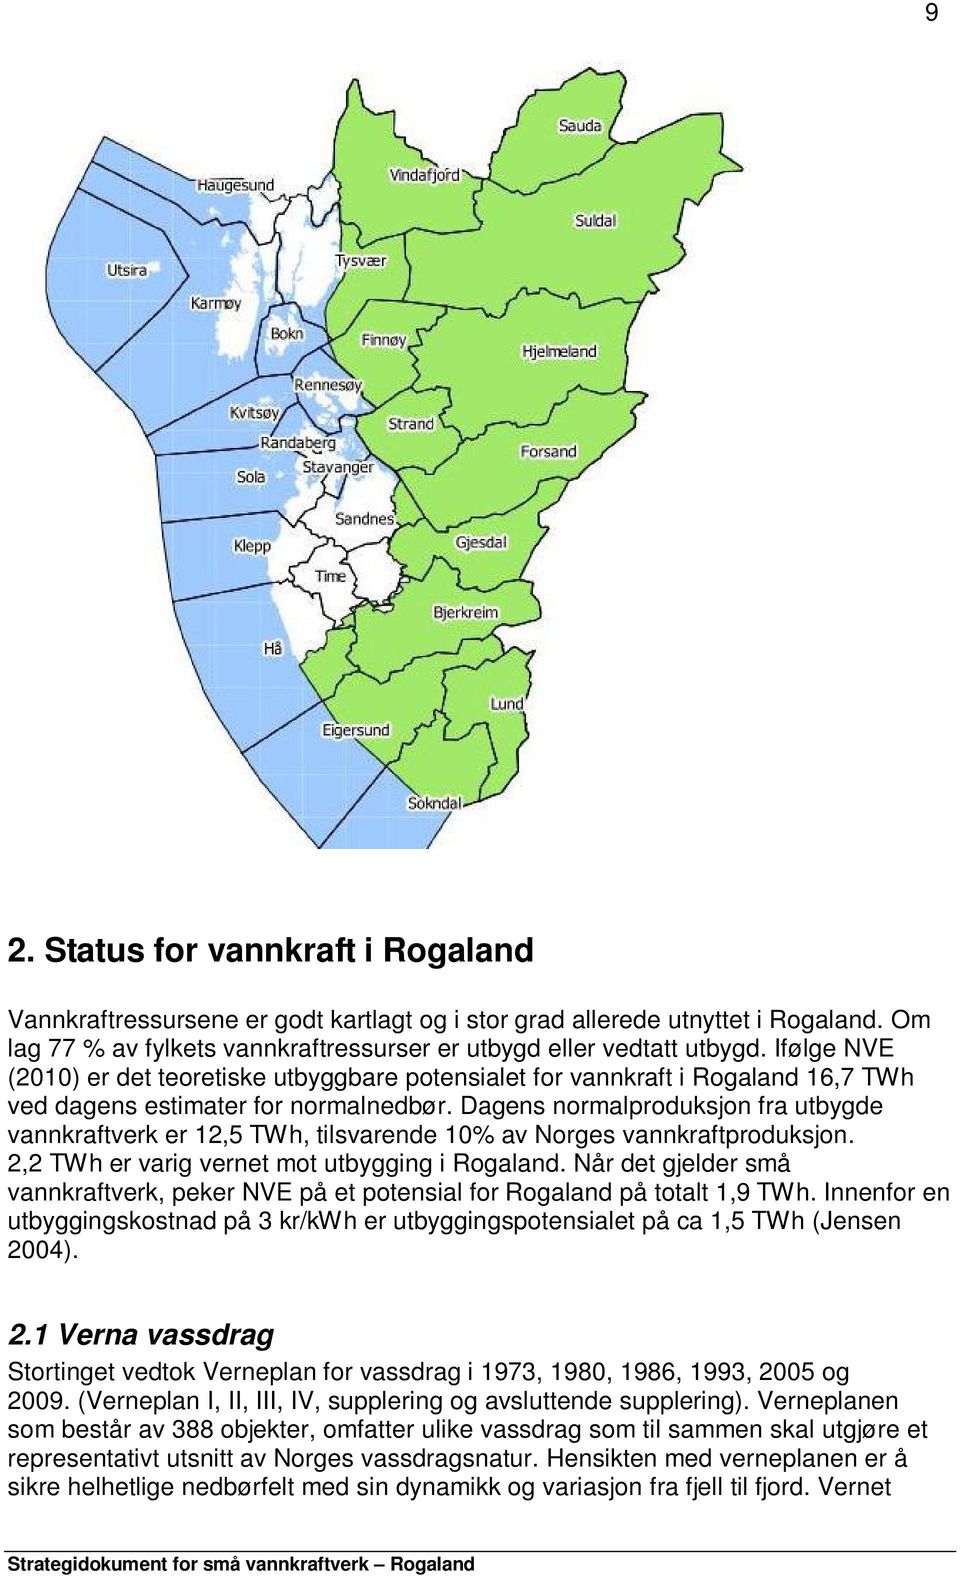 Dagens normalproduksjon fra utbygde vannkraftverk er 12,5 TWh, tilsvarende 10% av Norges vannkraftproduksjon. 2,2 TWh er varig vernet mot utbygging i Rogaland.